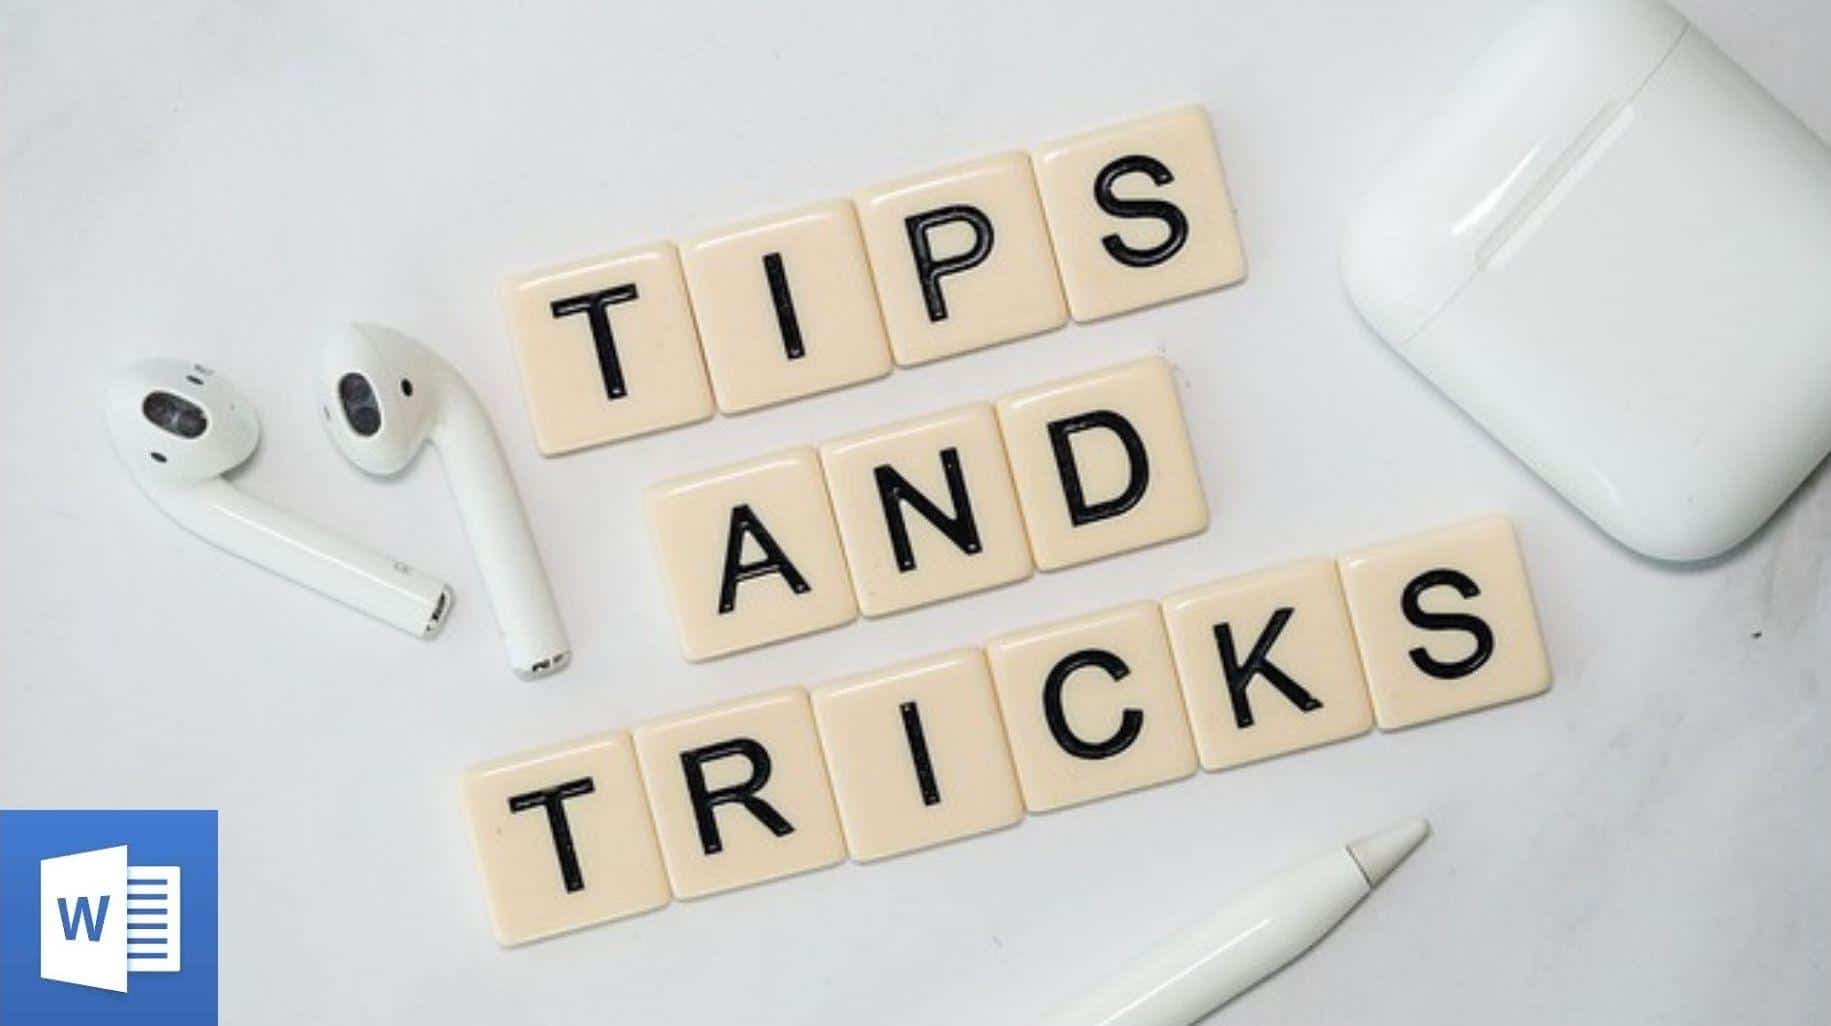 mage contenant des pièces de scrabble indiquant la phrase « Tips and tricks ». A côté se trouvent des airpods et en bas à gauche le logo de Word.